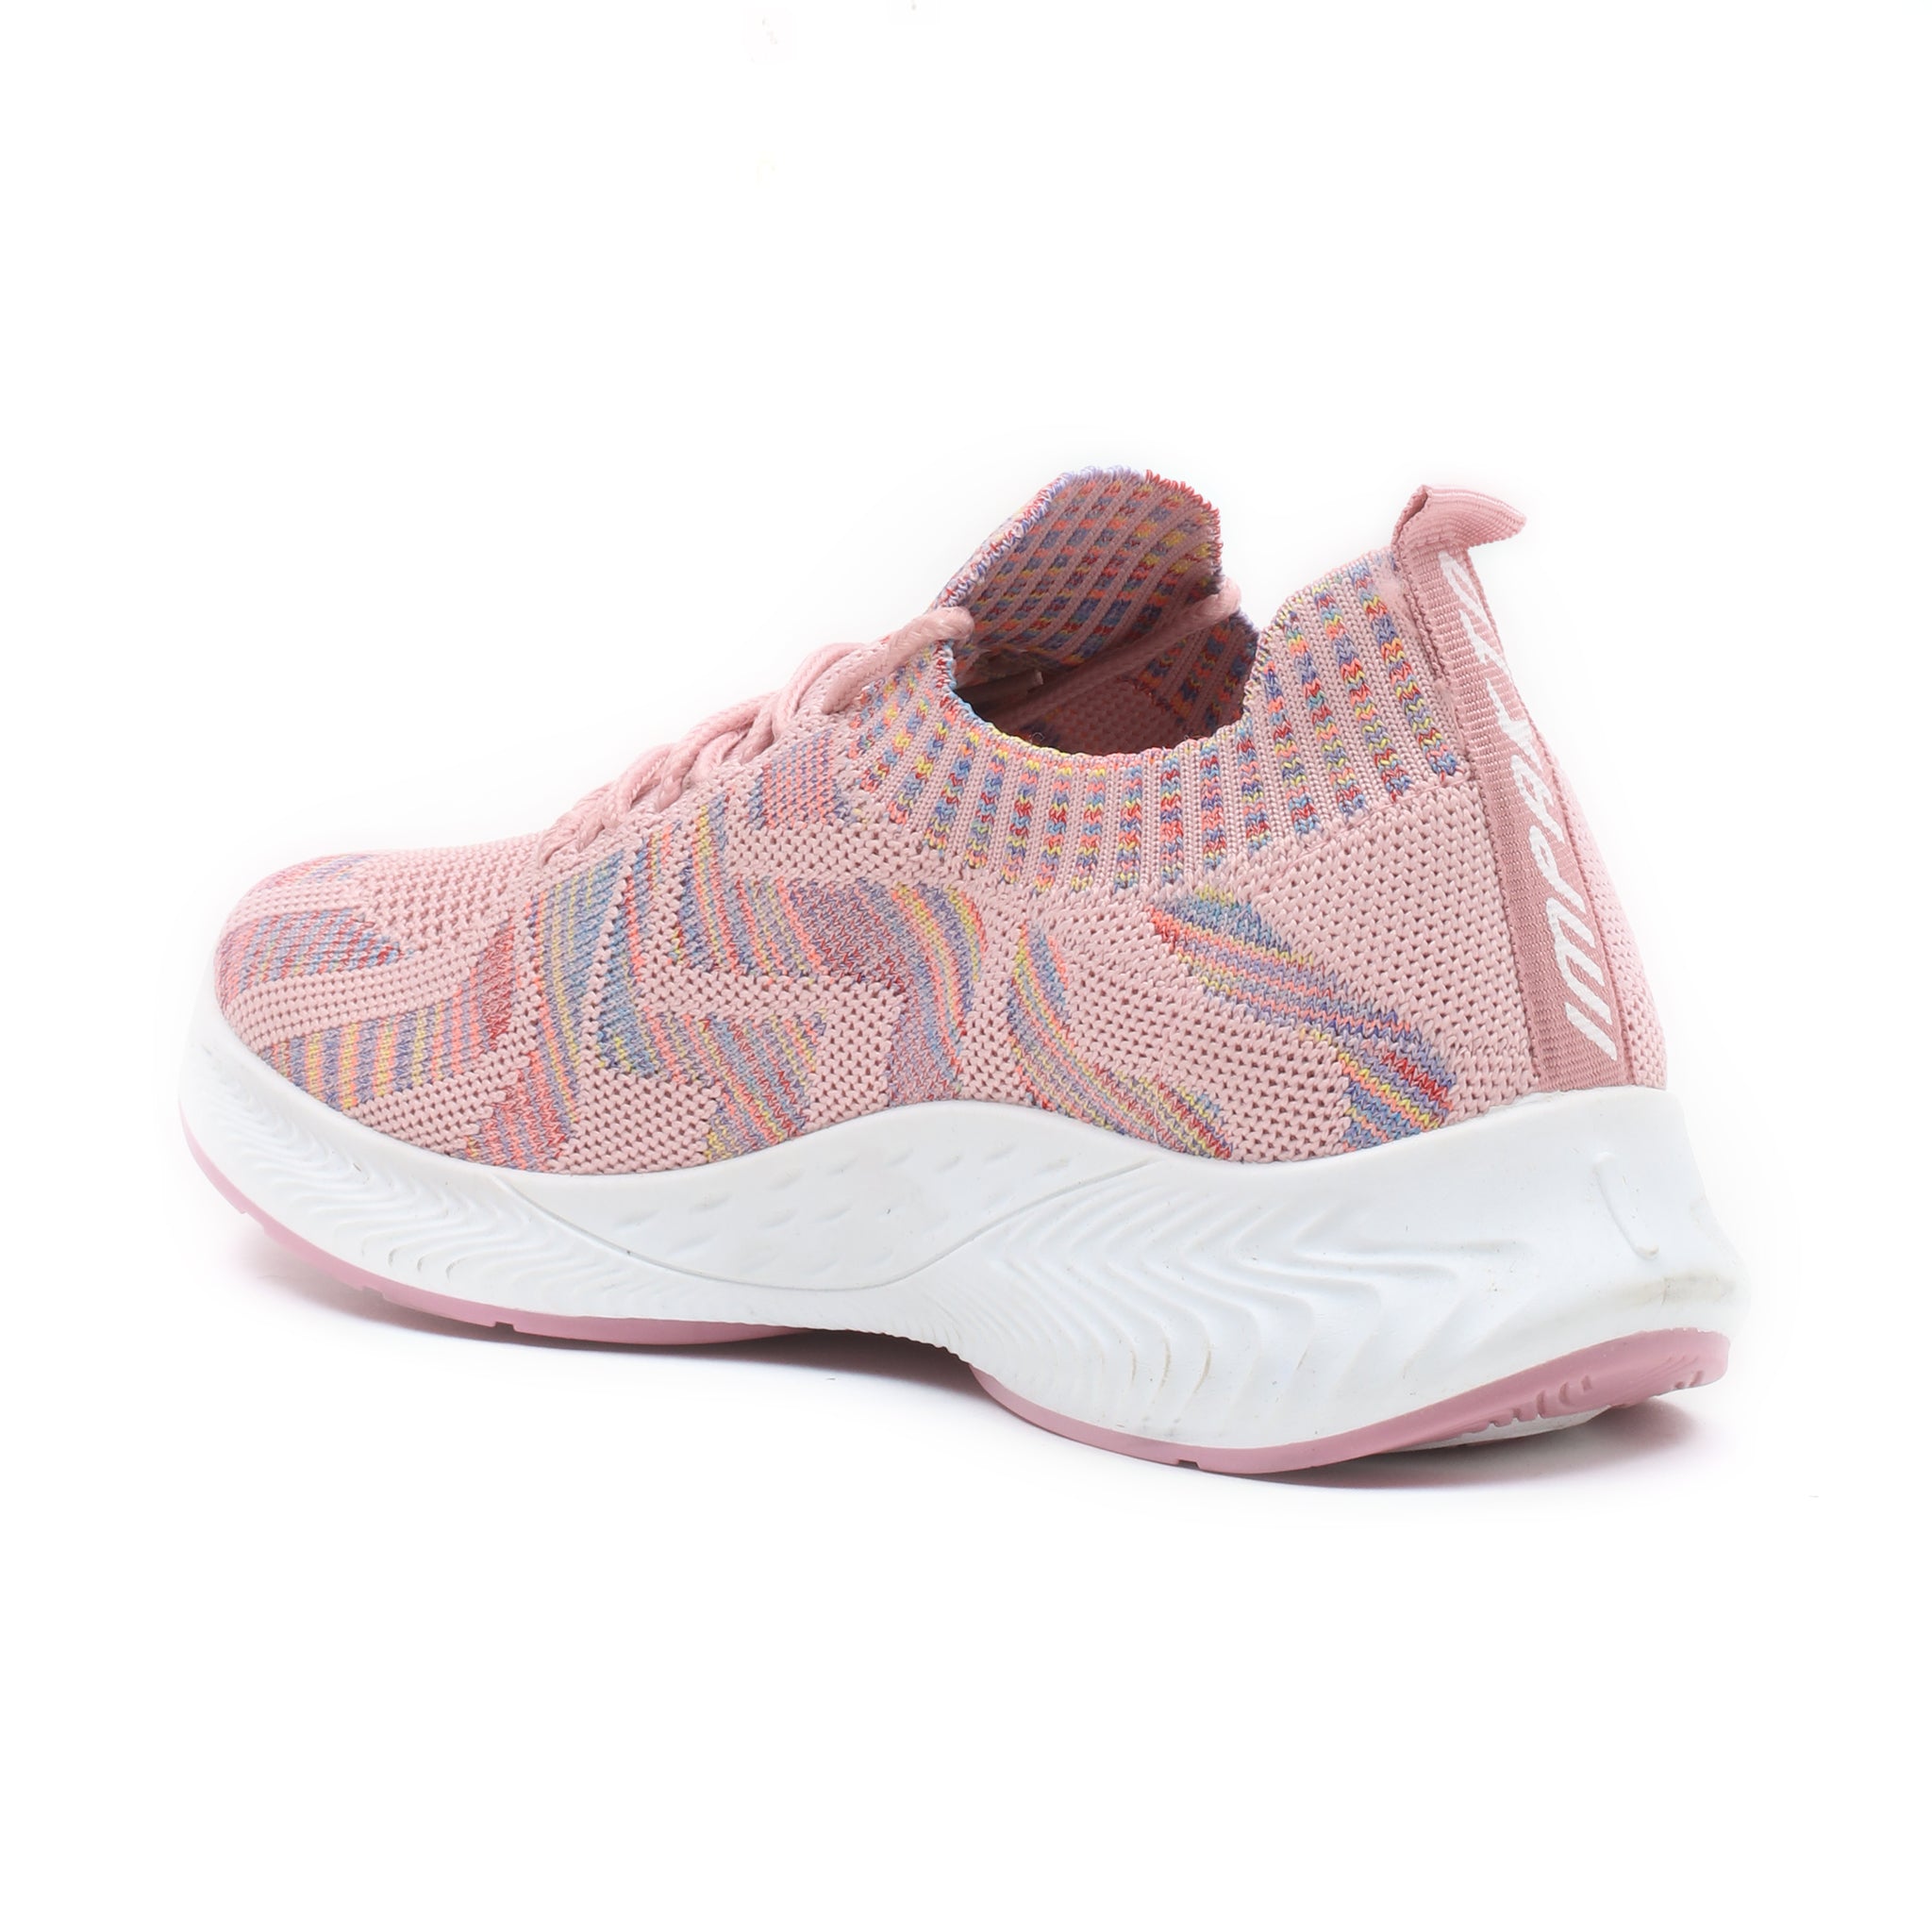 Impakto Blush Bloom Women's Pink Running Shoes